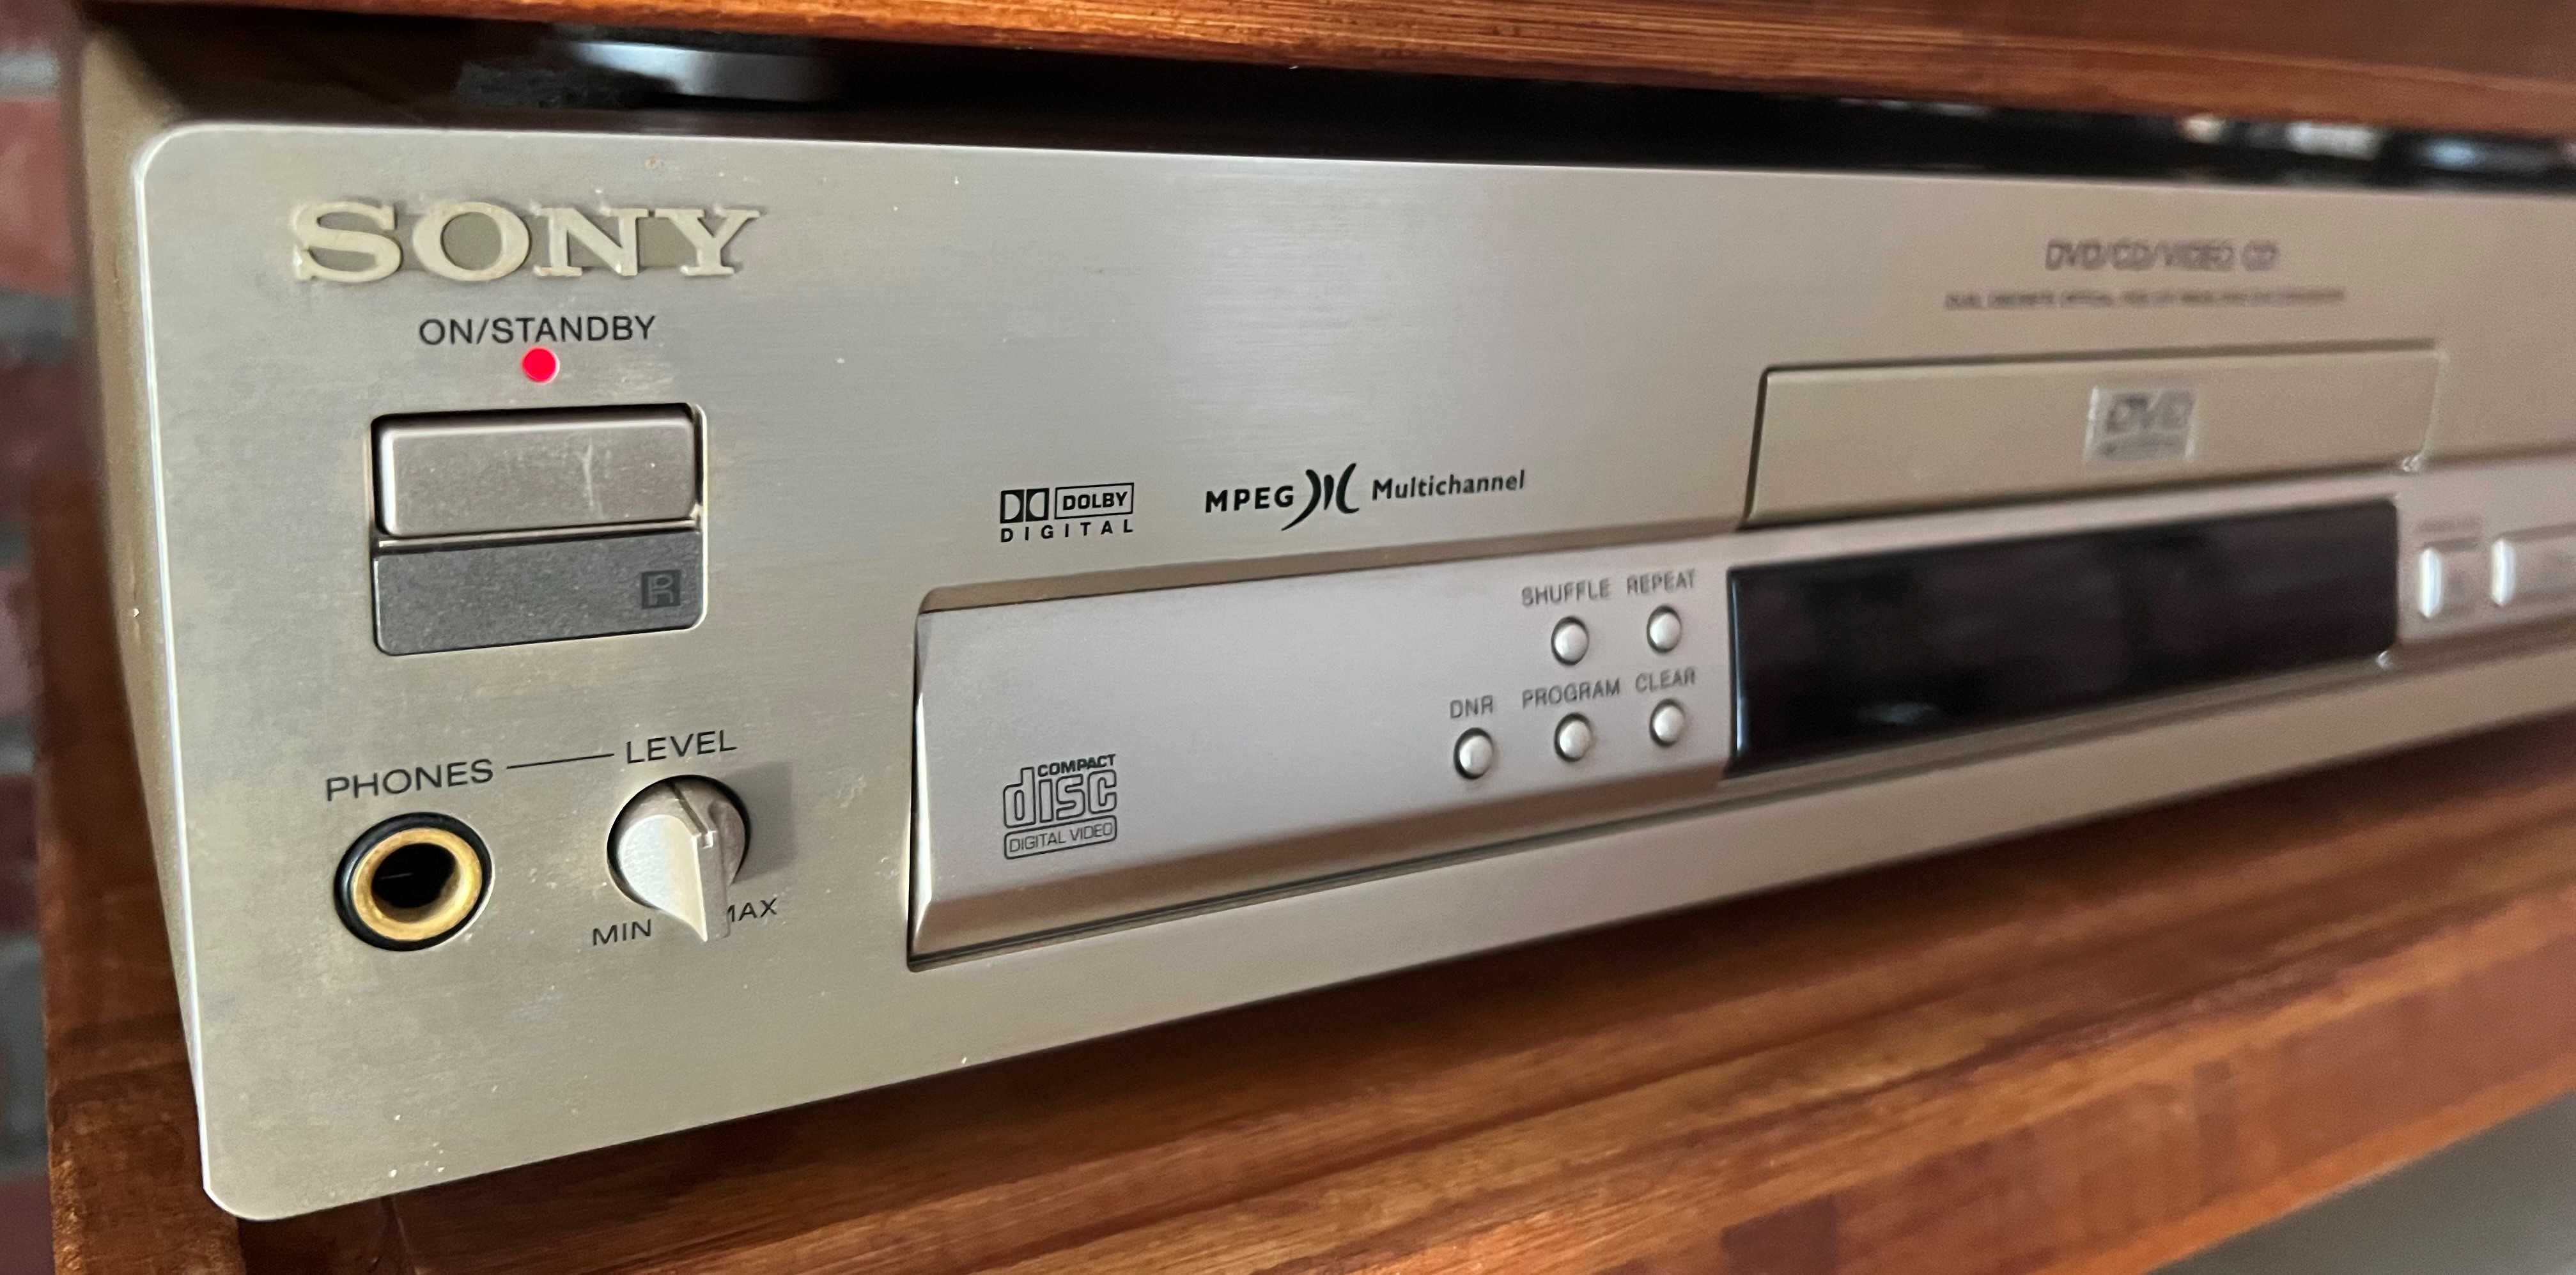 Sony dvp-s715 dvd cd player